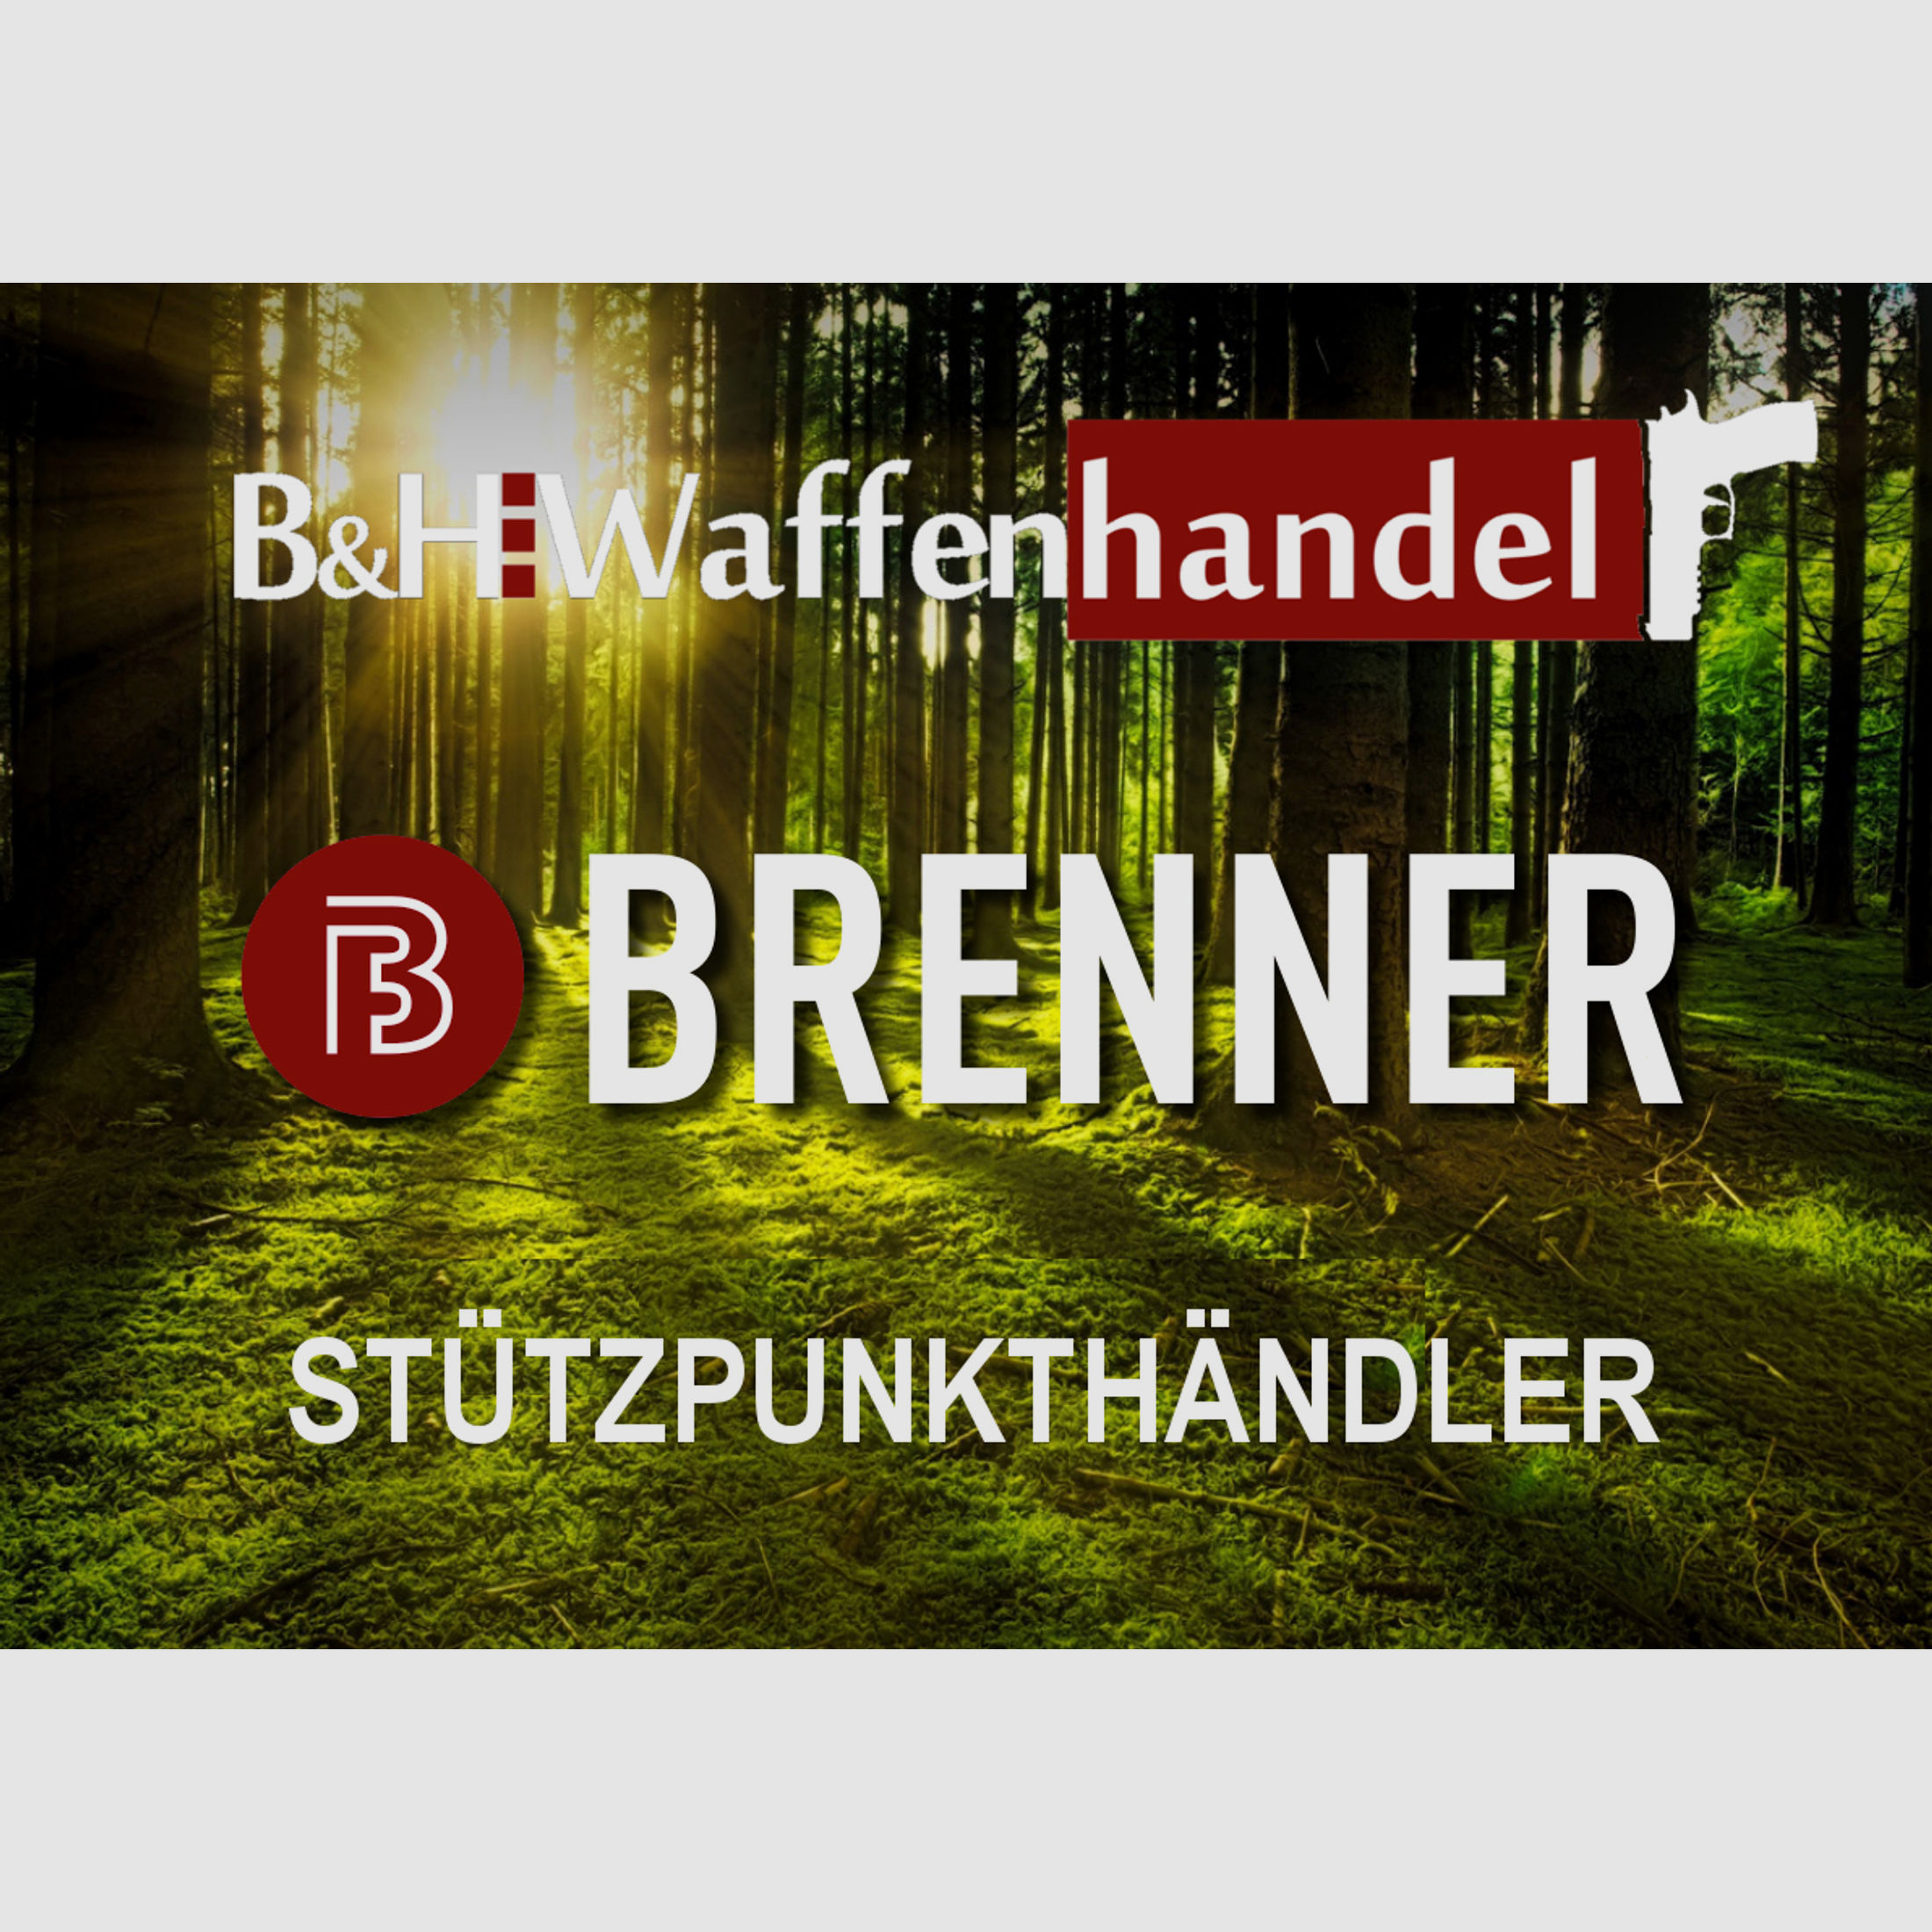 Komplettpaket: Brenner BR20 B&H Prohunter Flex Lochschaft mit doppelter Verstellung inkl. Bushnell 2.5-15x50 (Art.Nr.: BR20PHFP7) Finanzierung möglich